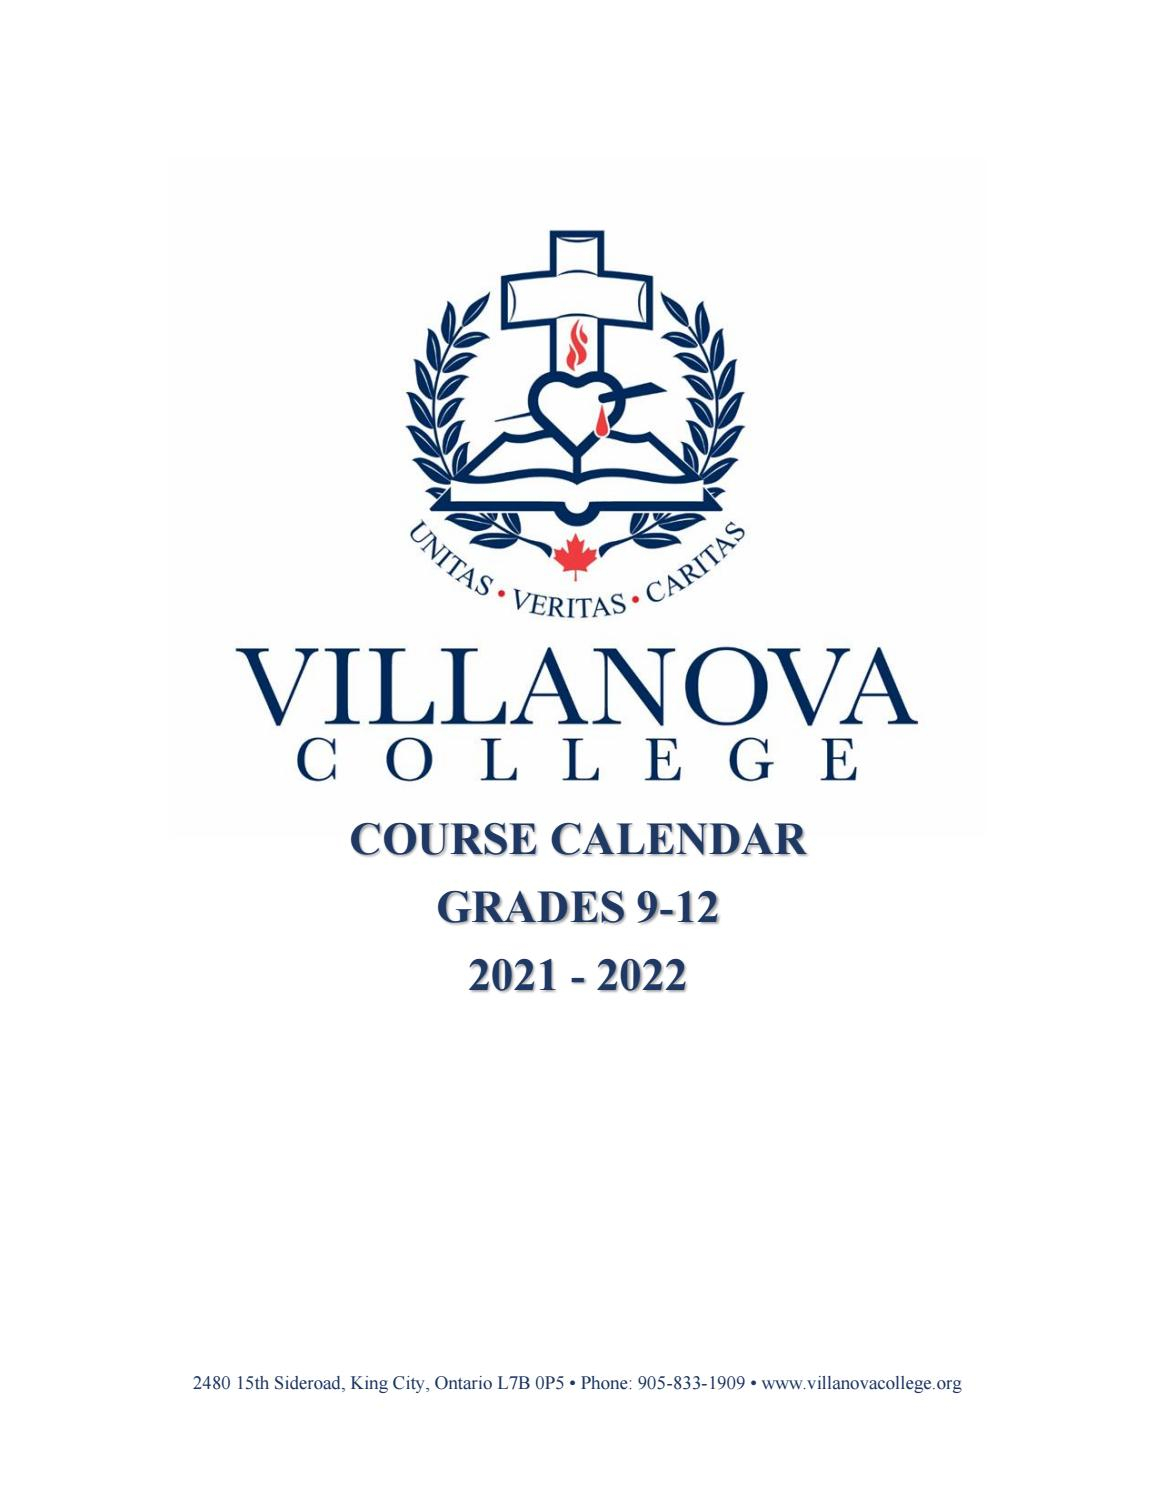 Villanova College Course Calendar 2021-2022 By Villanova